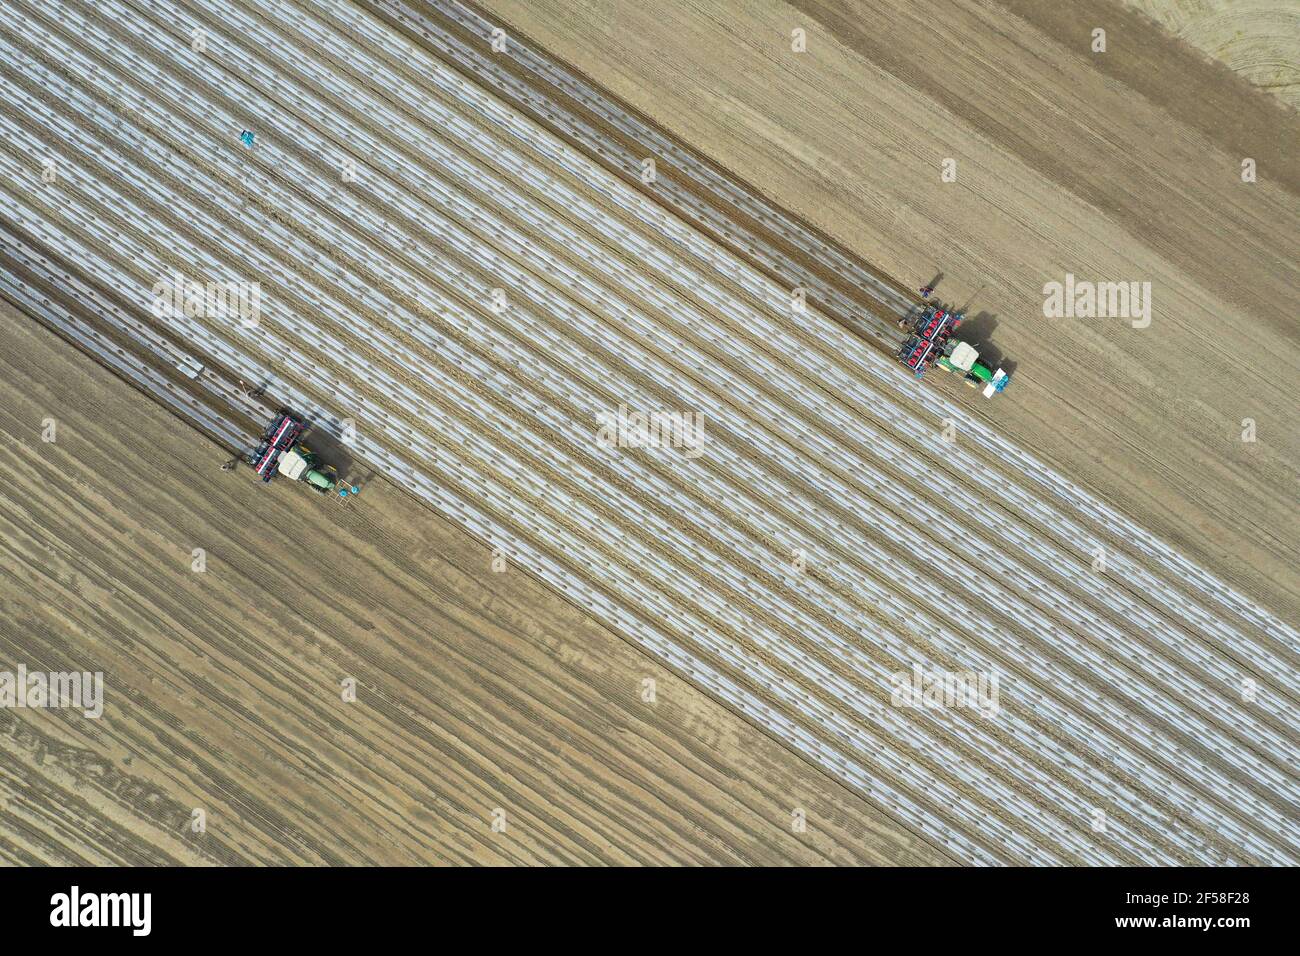 XINJIANG, CHINA - 24 DE MARZO de 2021 - los plantadores equipados con el sistema de navegación de posicionamiento por satélite Beidou siembran algodón en una granja del Regimiento 49th de la División 3rd del cuerpo de producción y Construcción de Xinjiang en Xinjiang, capital de China, 24 de marzo de 2021. (Foto de Chen Yang / Costfoto/Sipa USA) Foto de stock